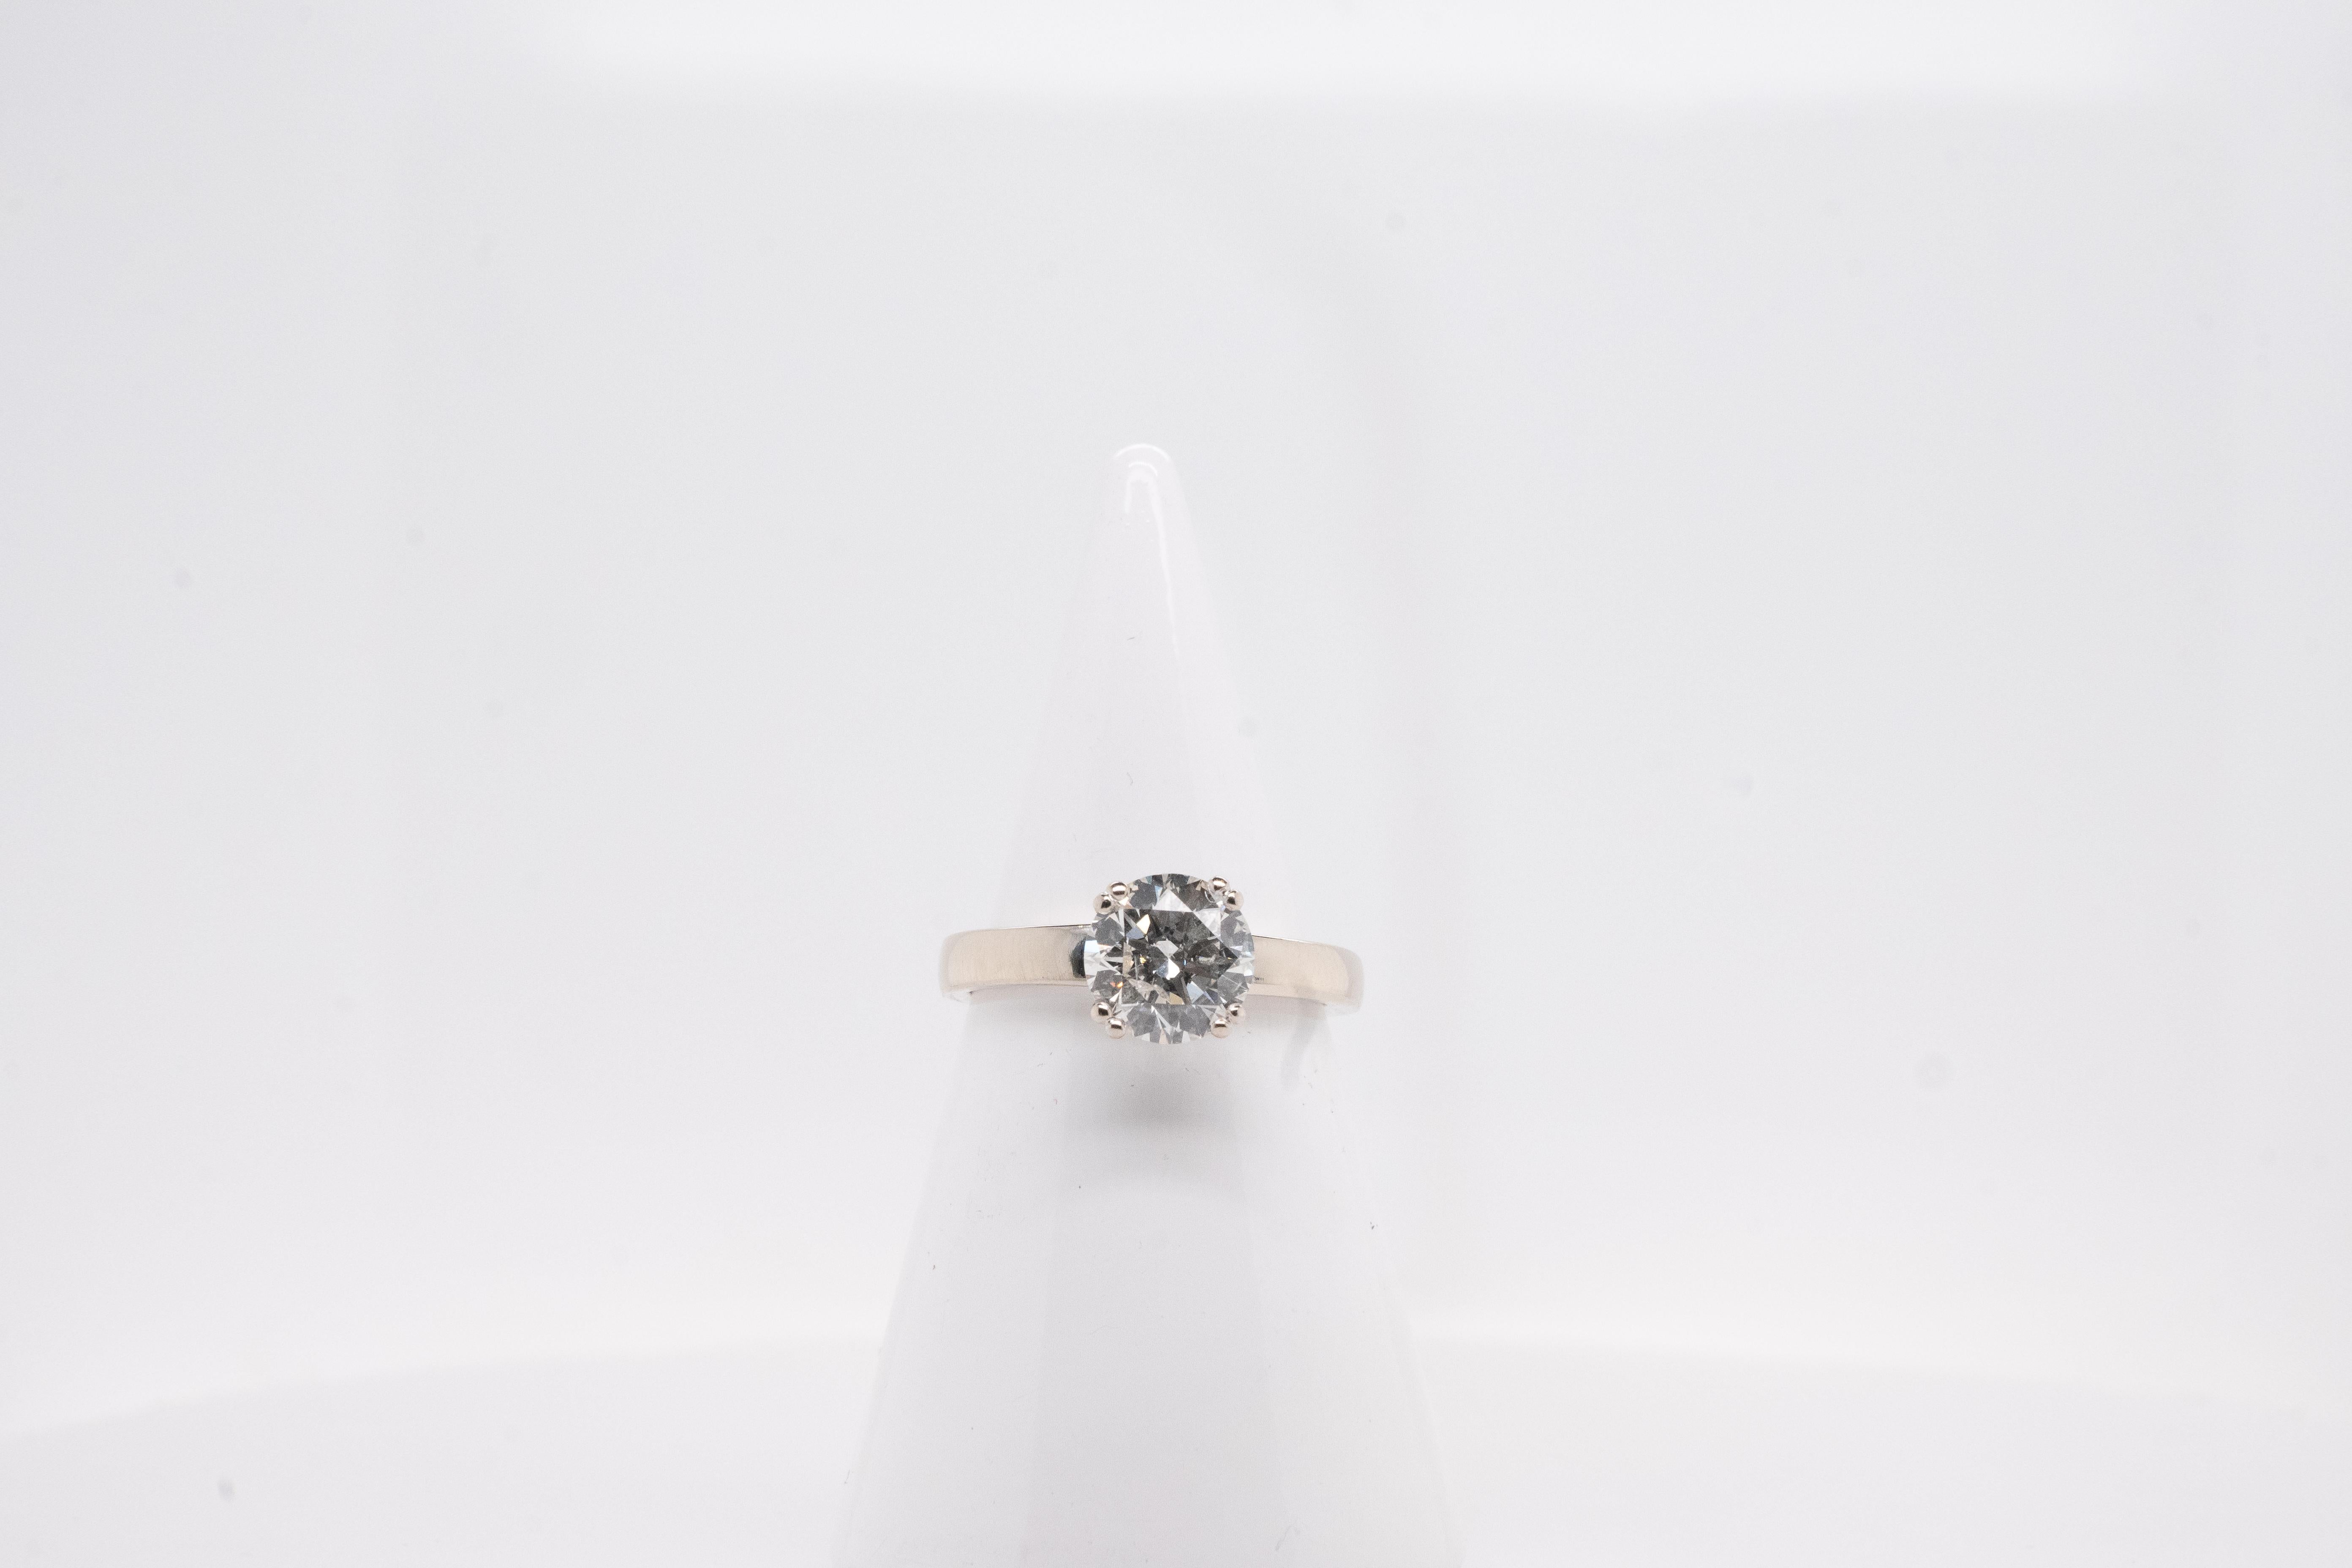 Entdecken Sie die Eleganz unseres Weißgoldrings. Dieser außergewöhnliche Solitärring ist mit einem funkelnden zentralen Diamanten von 1,51 Karat in der Farbe H/p1 besetzt. Dieser Naturstein fängt das Licht mit jeder Bewegung ein.

Der Ring ist auf